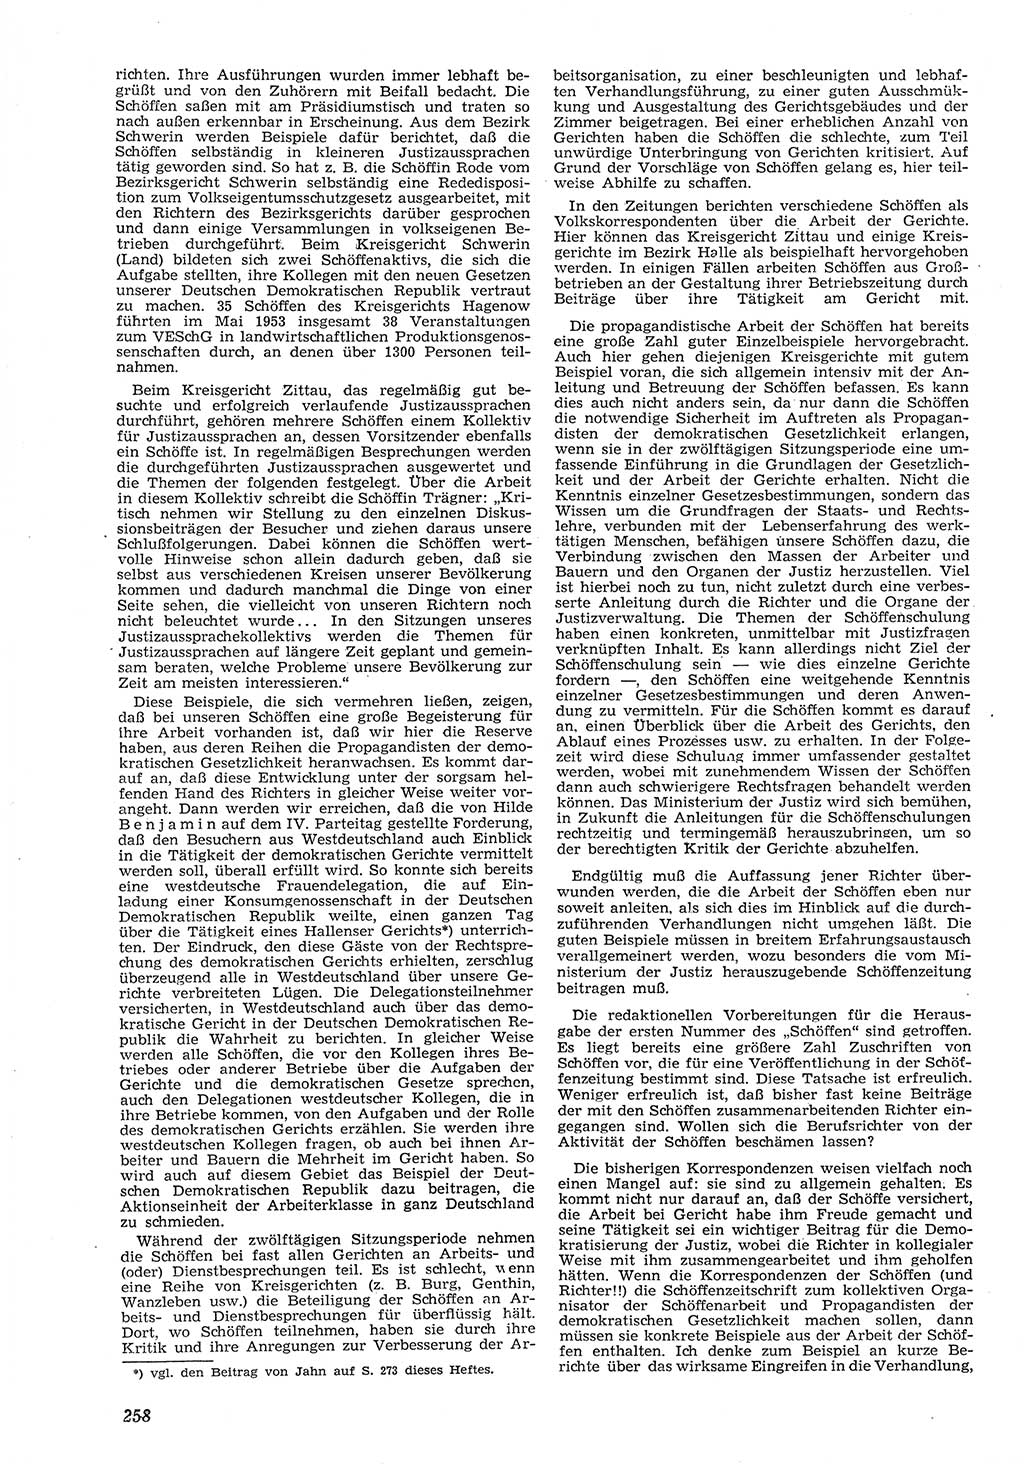 Neue Justiz (NJ), Zeitschrift für Recht und Rechtswissenschaft [Deutsche Demokratische Republik (DDR)], 8. Jahrgang 1954, Seite 258 (NJ DDR 1954, S. 258)